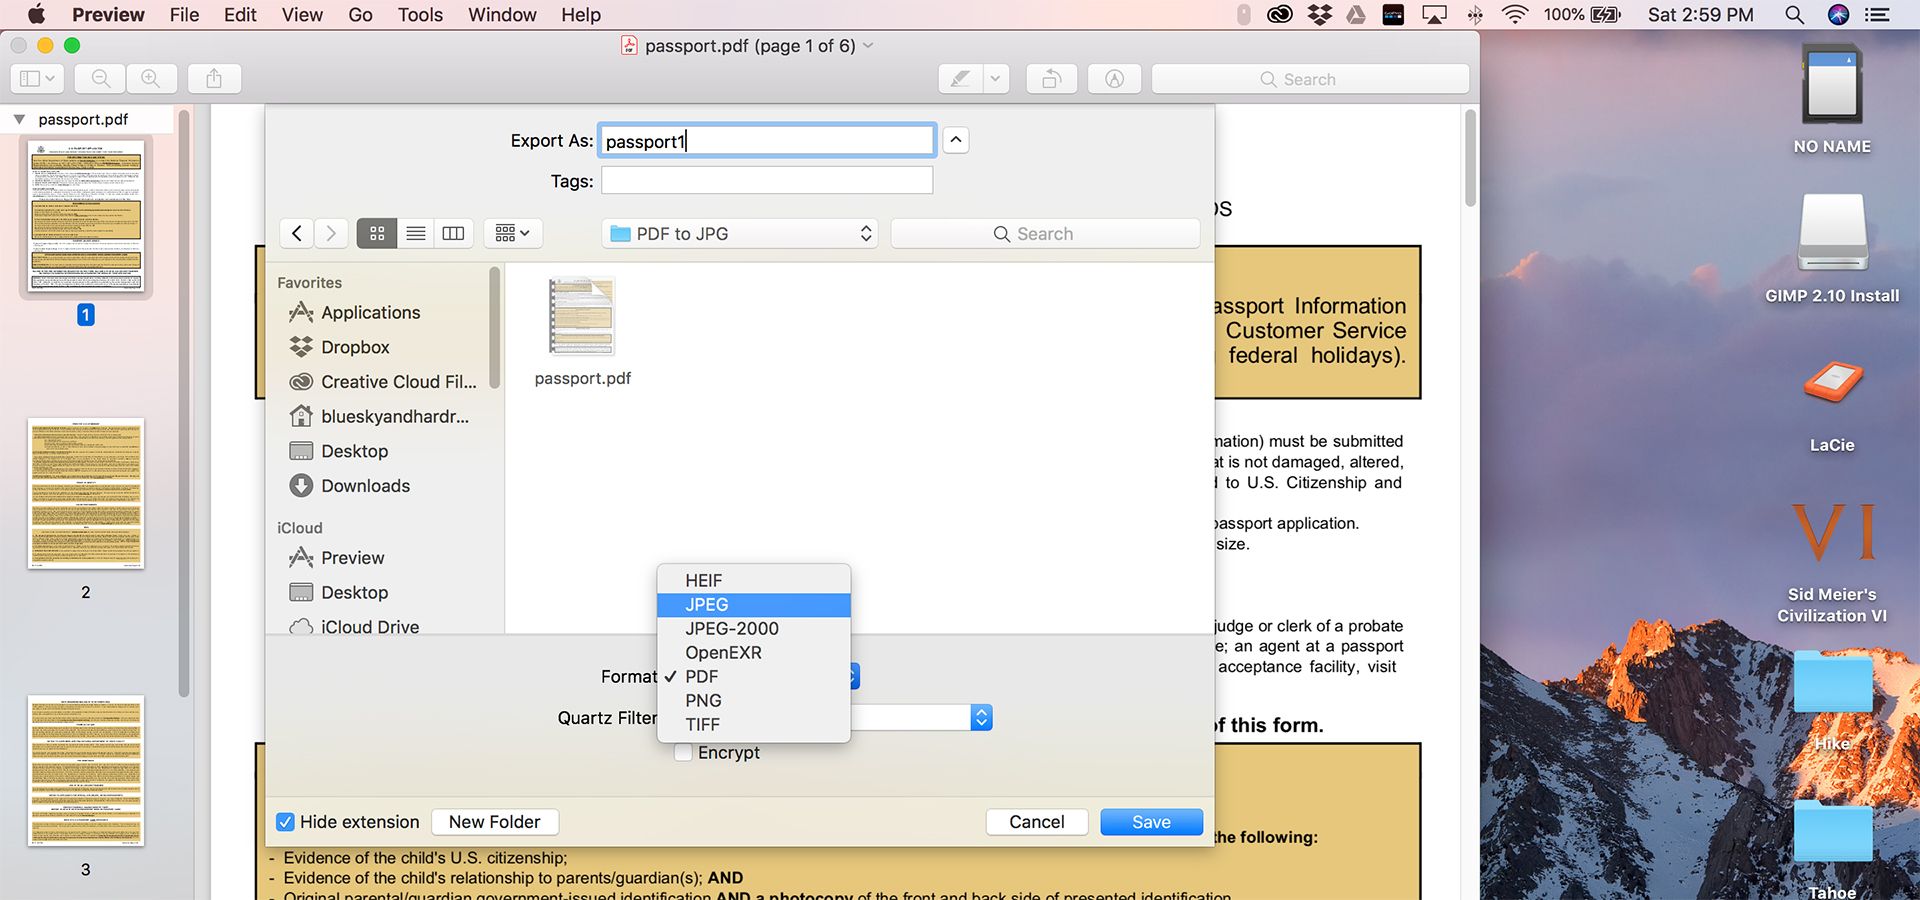 اسکرین شات اپ Preview مک فرمت های مختلف برای ذخیره را نشان می دهد